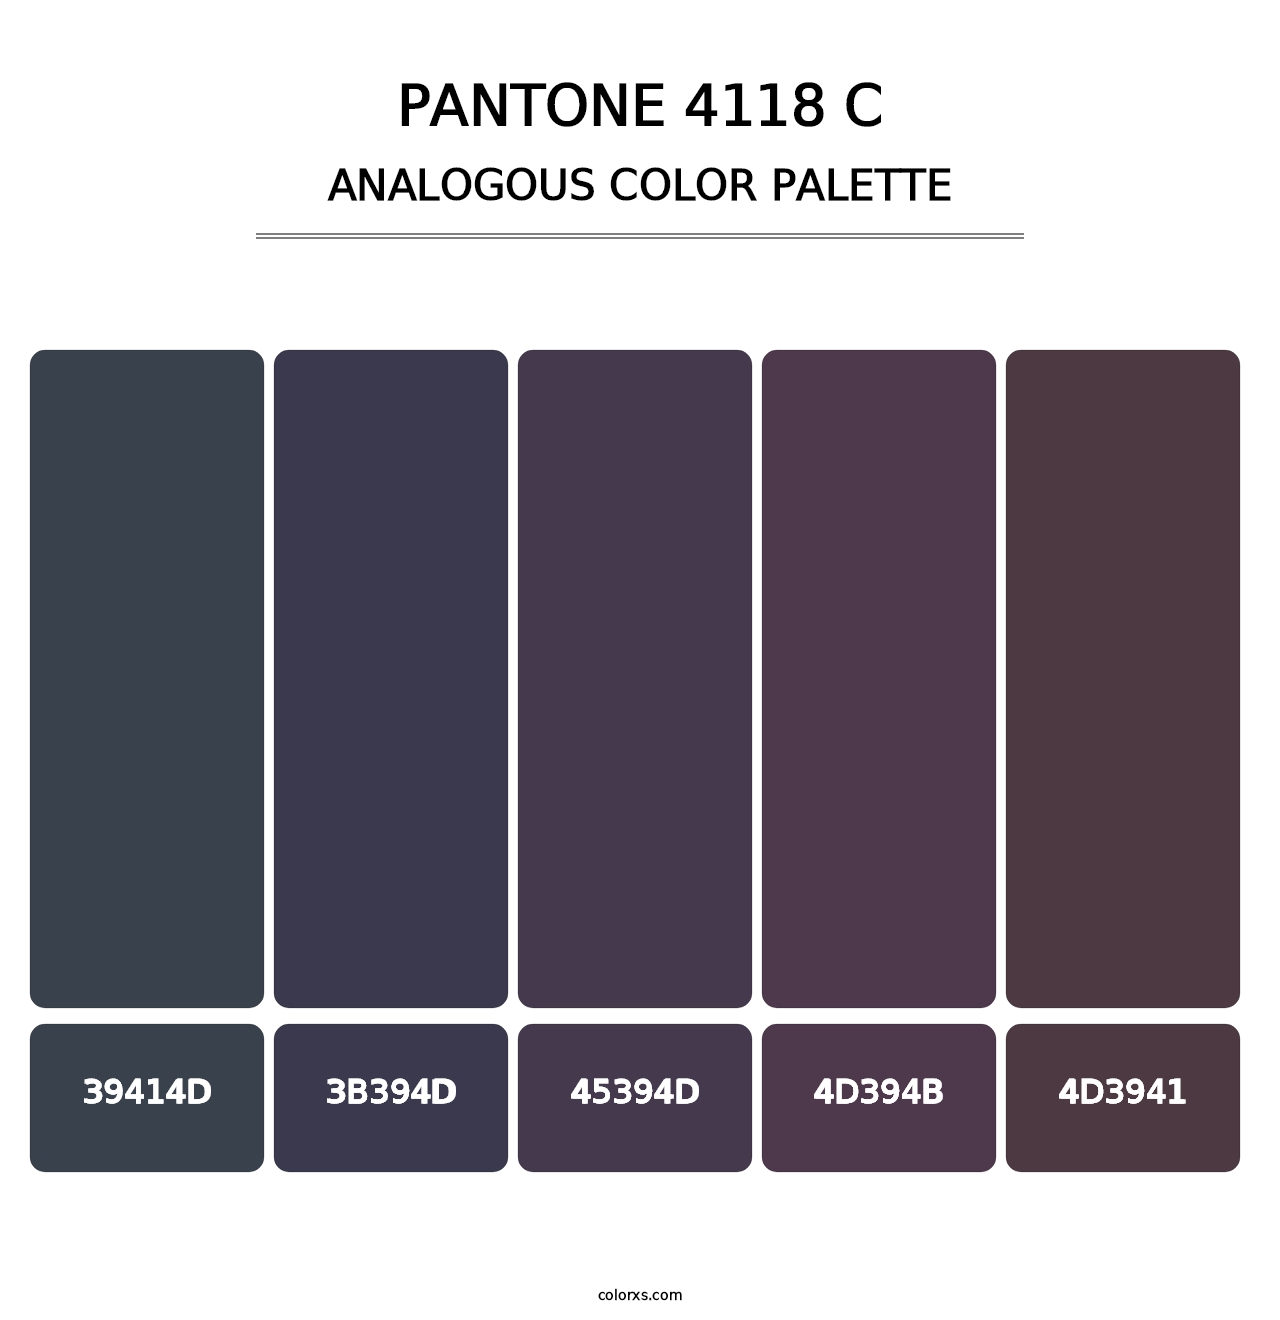 PANTONE 4118 C - Analogous Color Palette